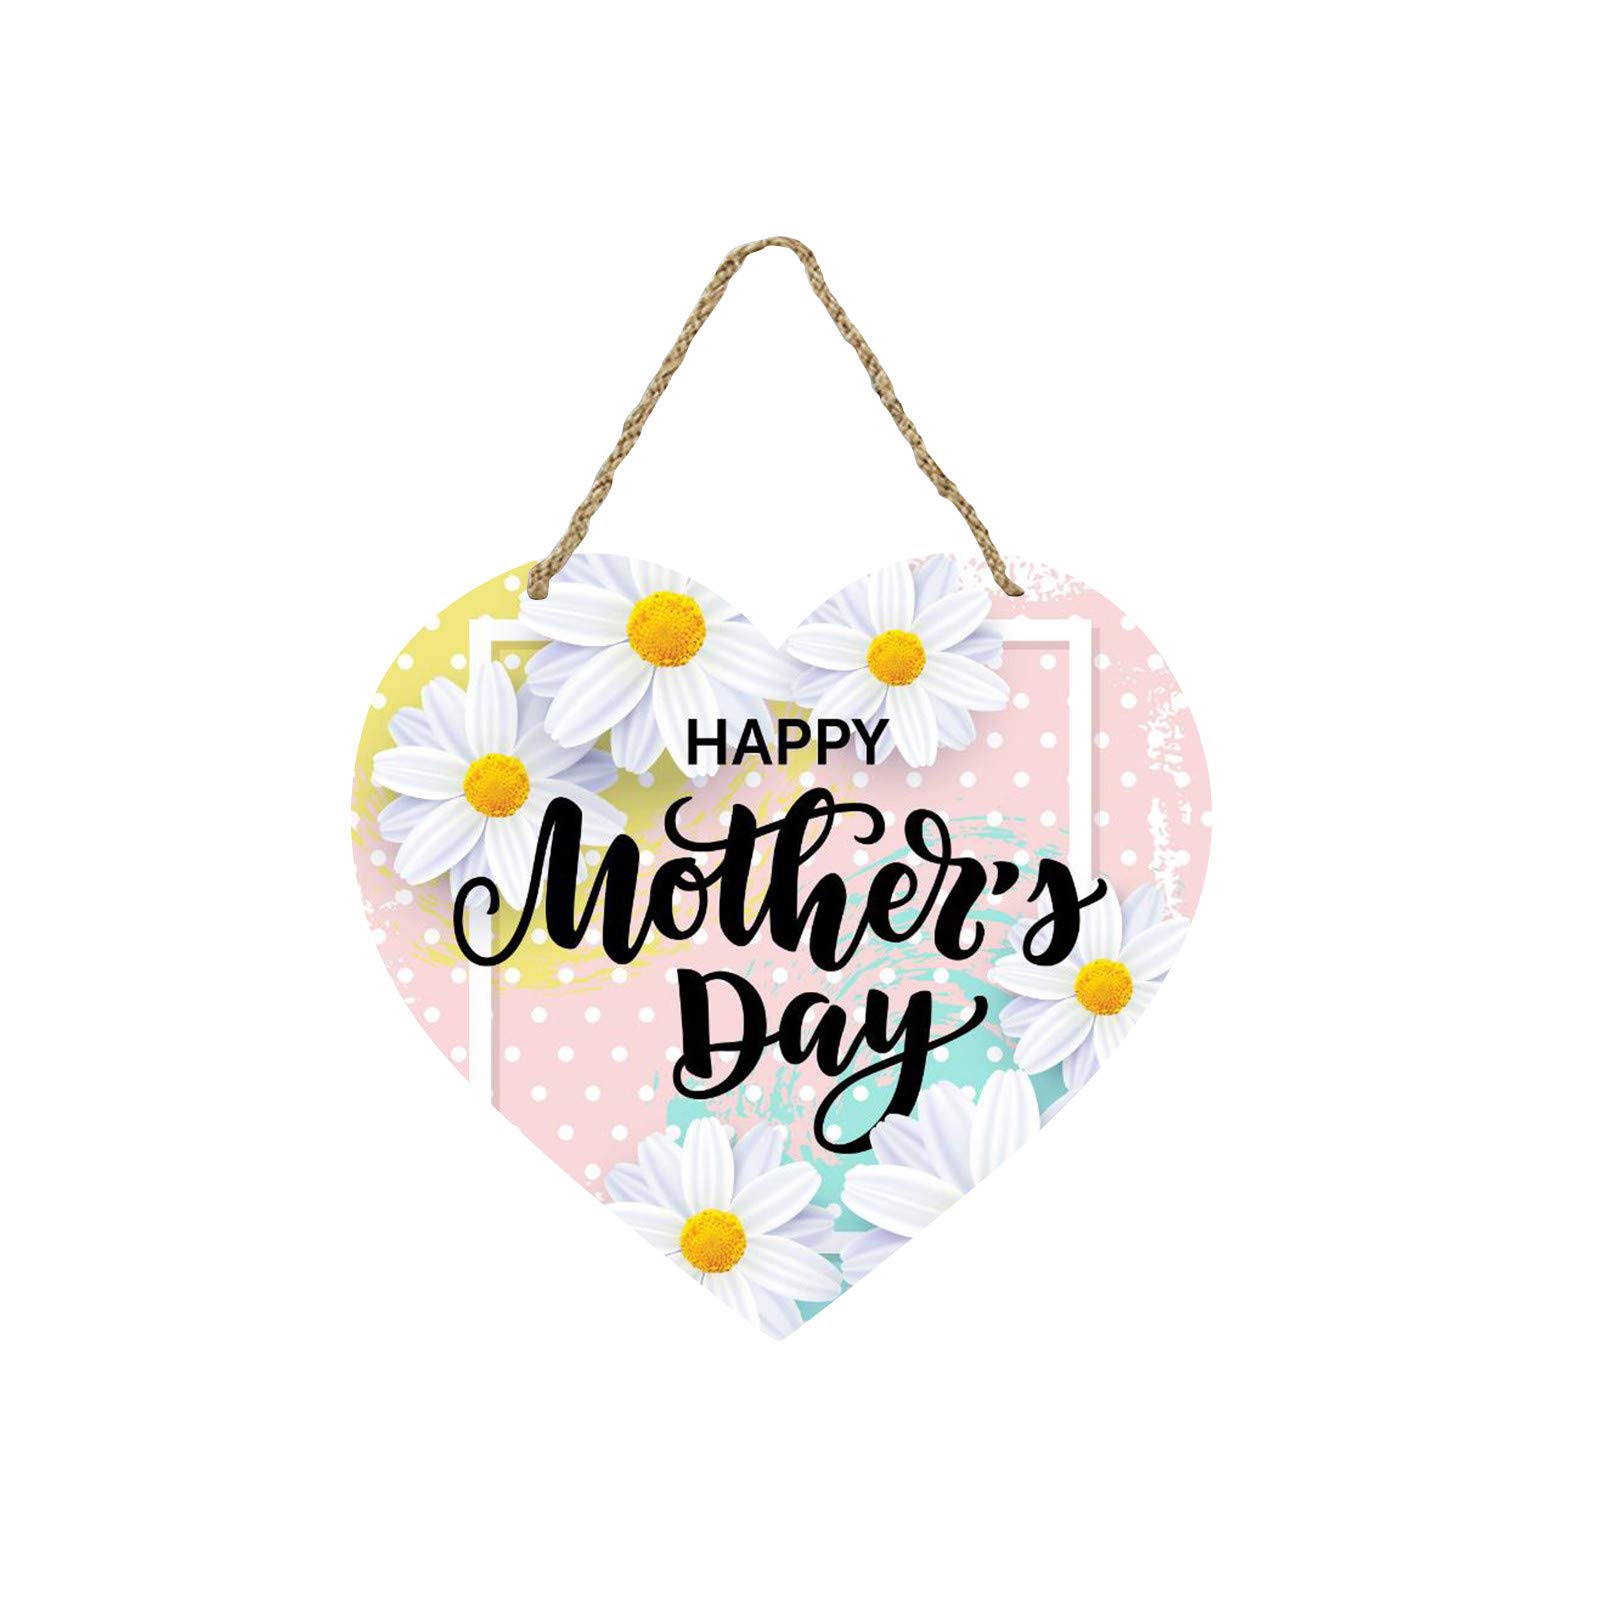 DIY Home Improvement: Creative Door Hanger Ideas For Mother's Day